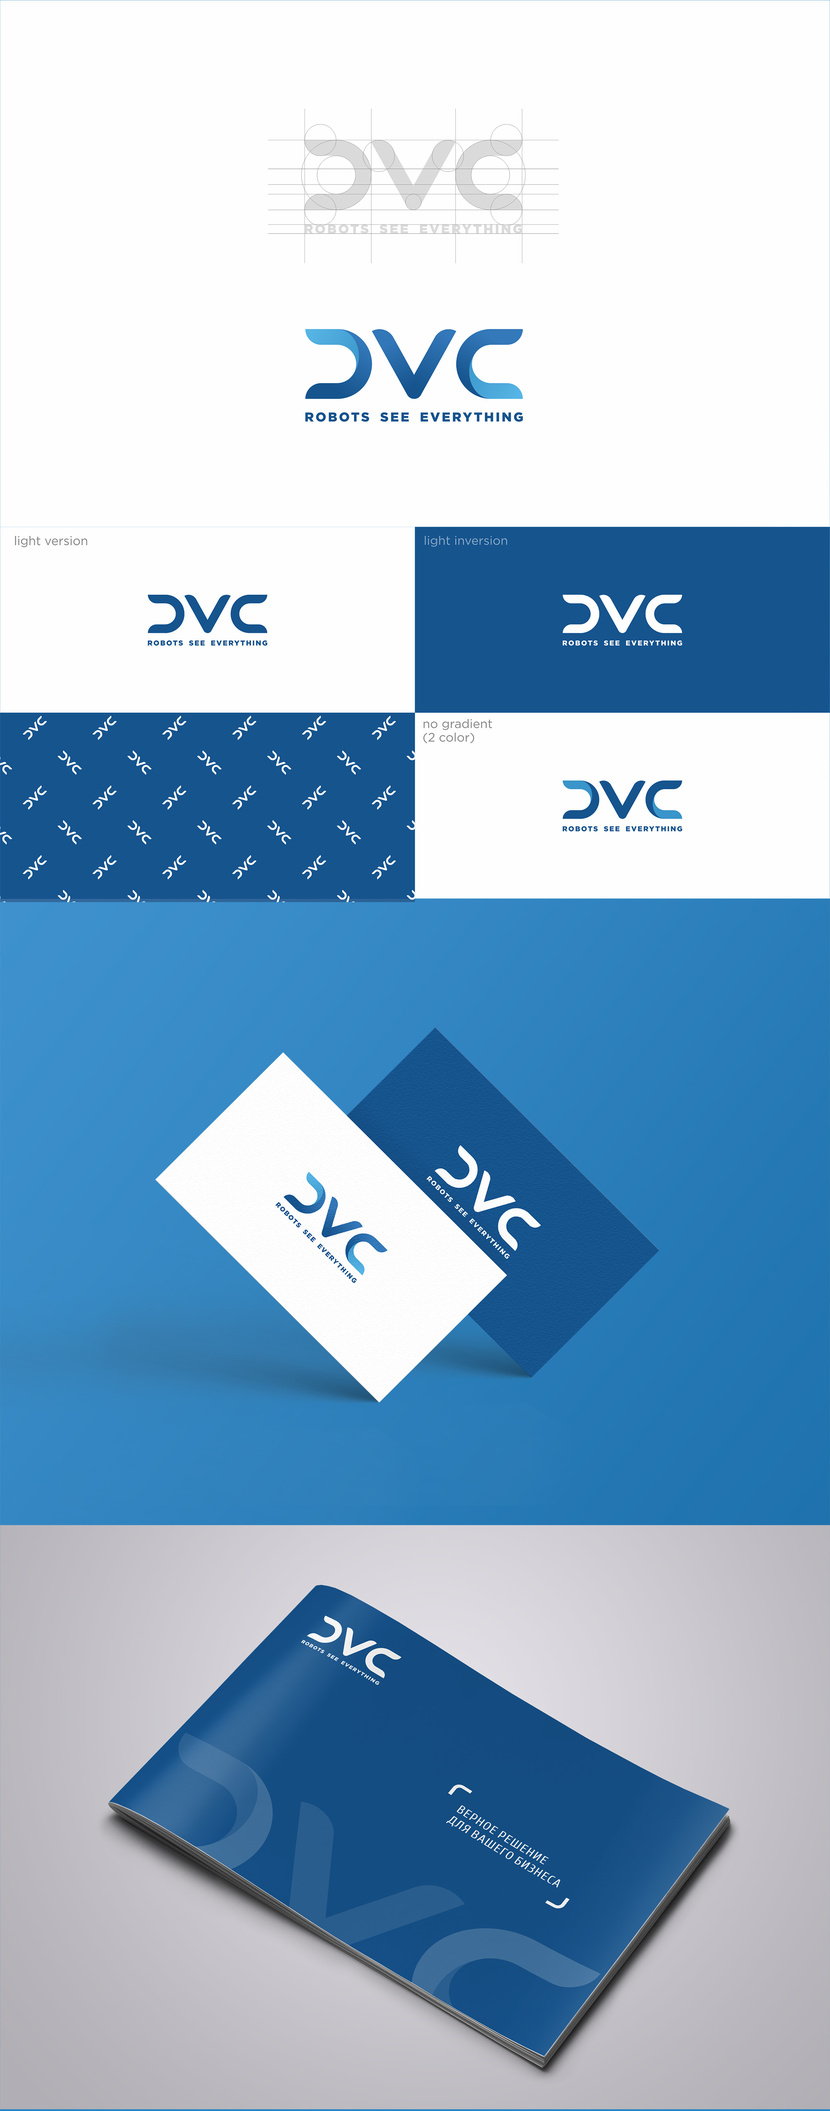 Создание логотипа и фирменного стиля для бренда системы событийного видеоконтроля CVC ( Cyber Vision Control  )  работа №758905